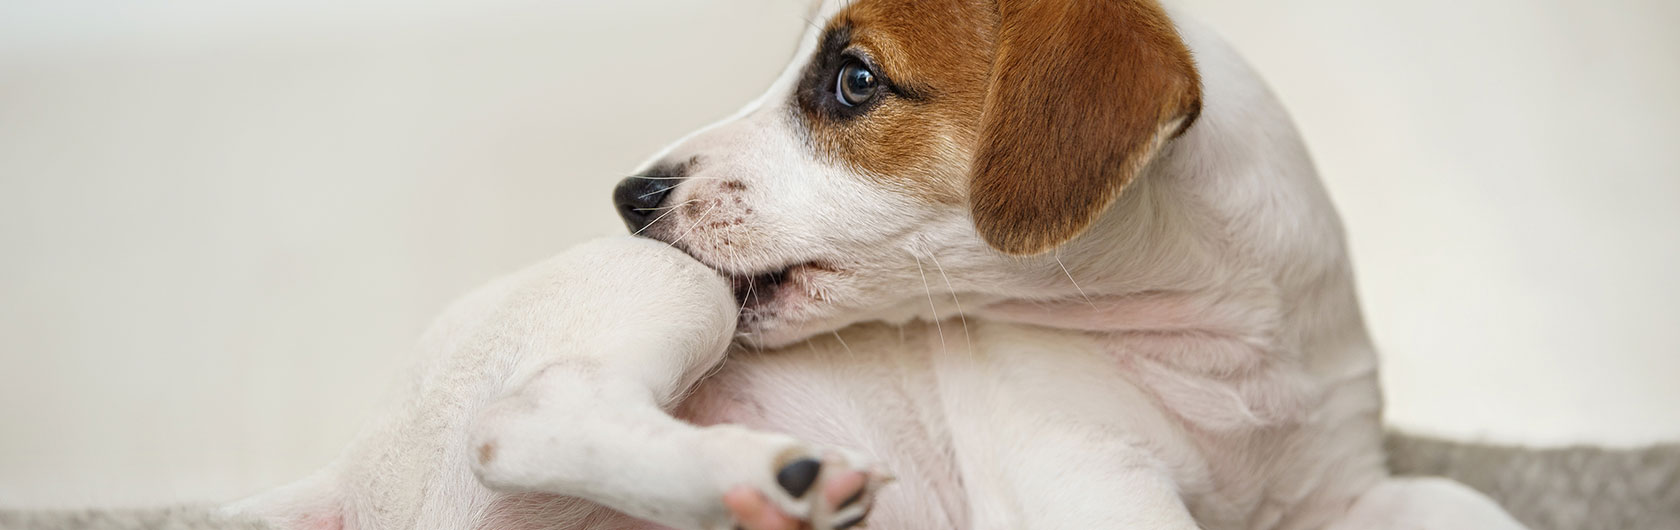 como tratar las garrapatas en perros y alimento para perros de calidad nutribon